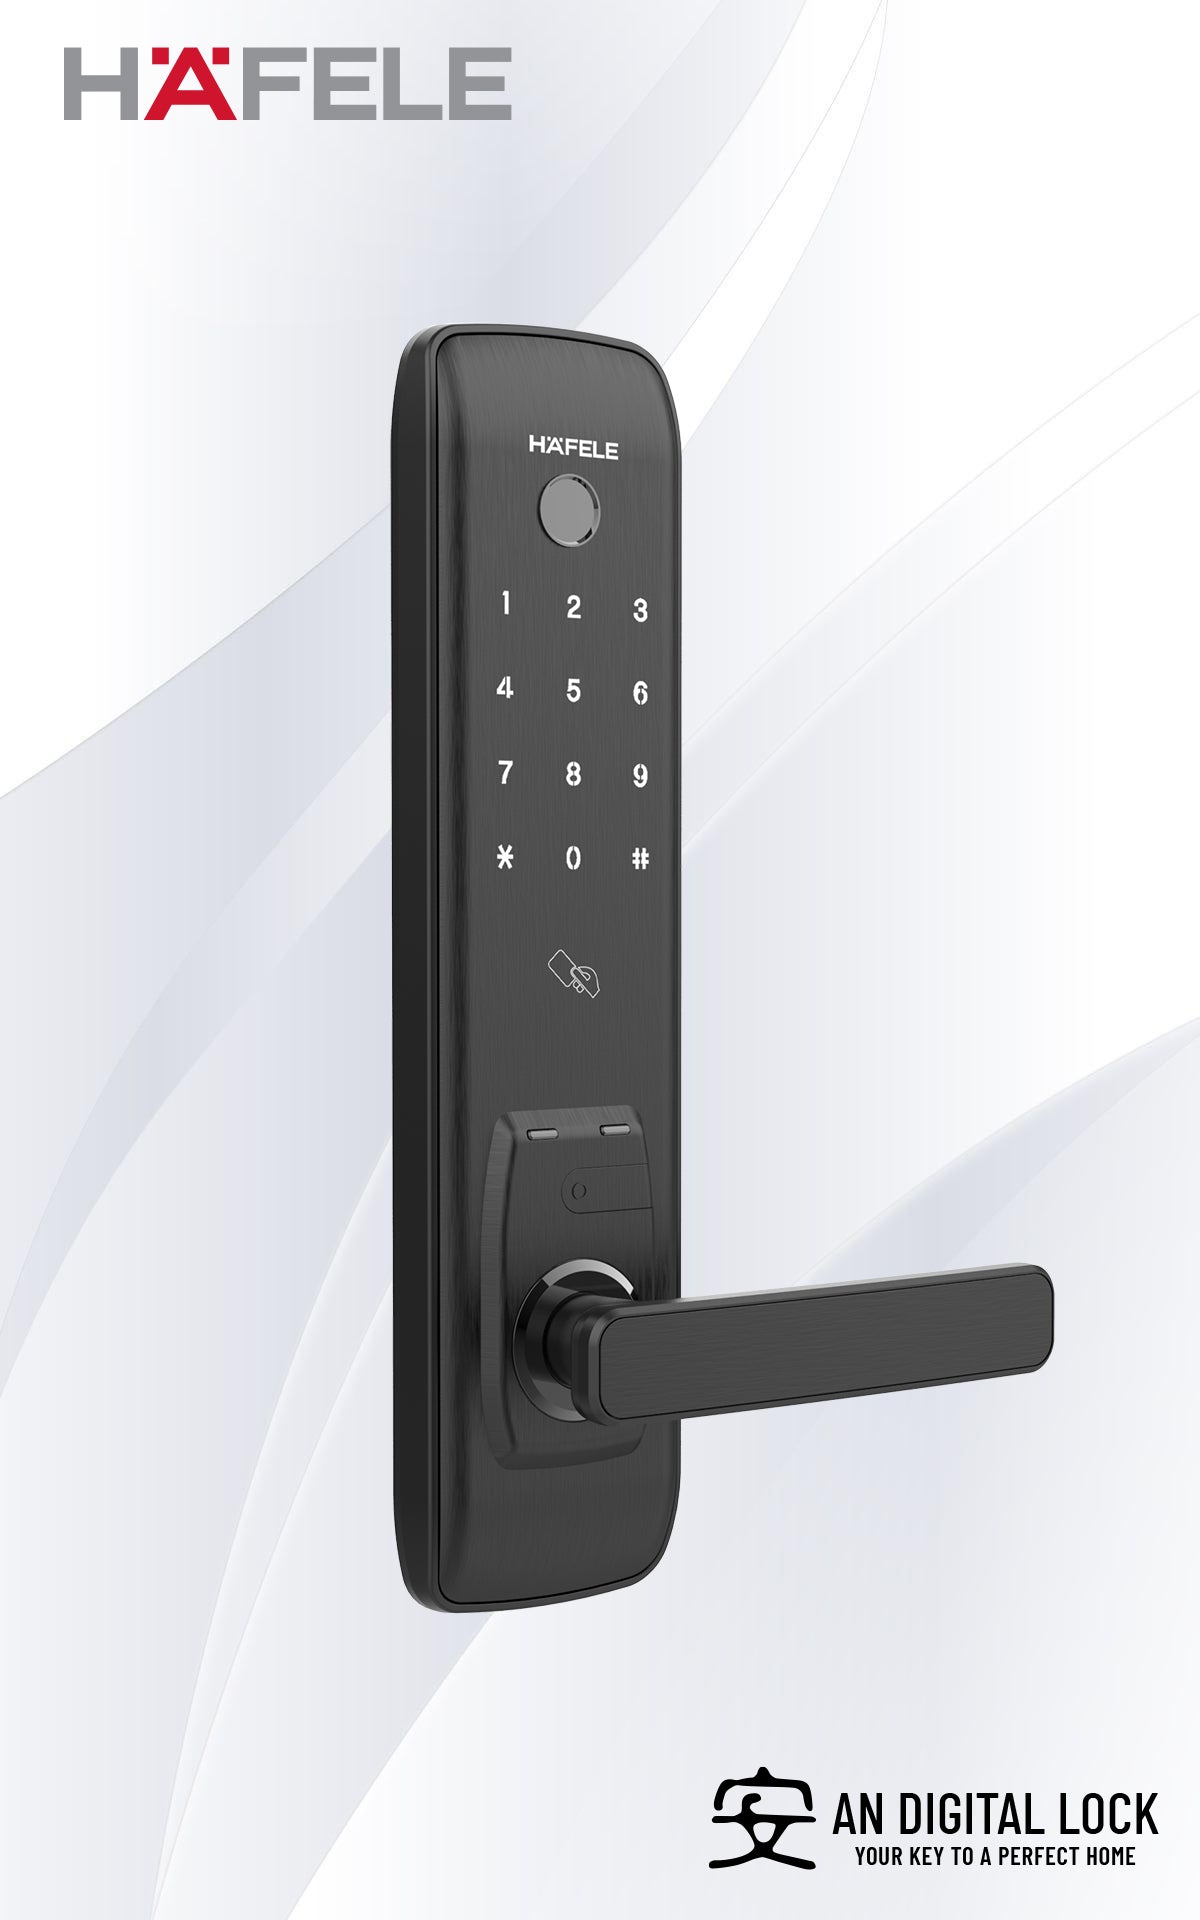 hafele-el7800-plus-digital-door-lock-1